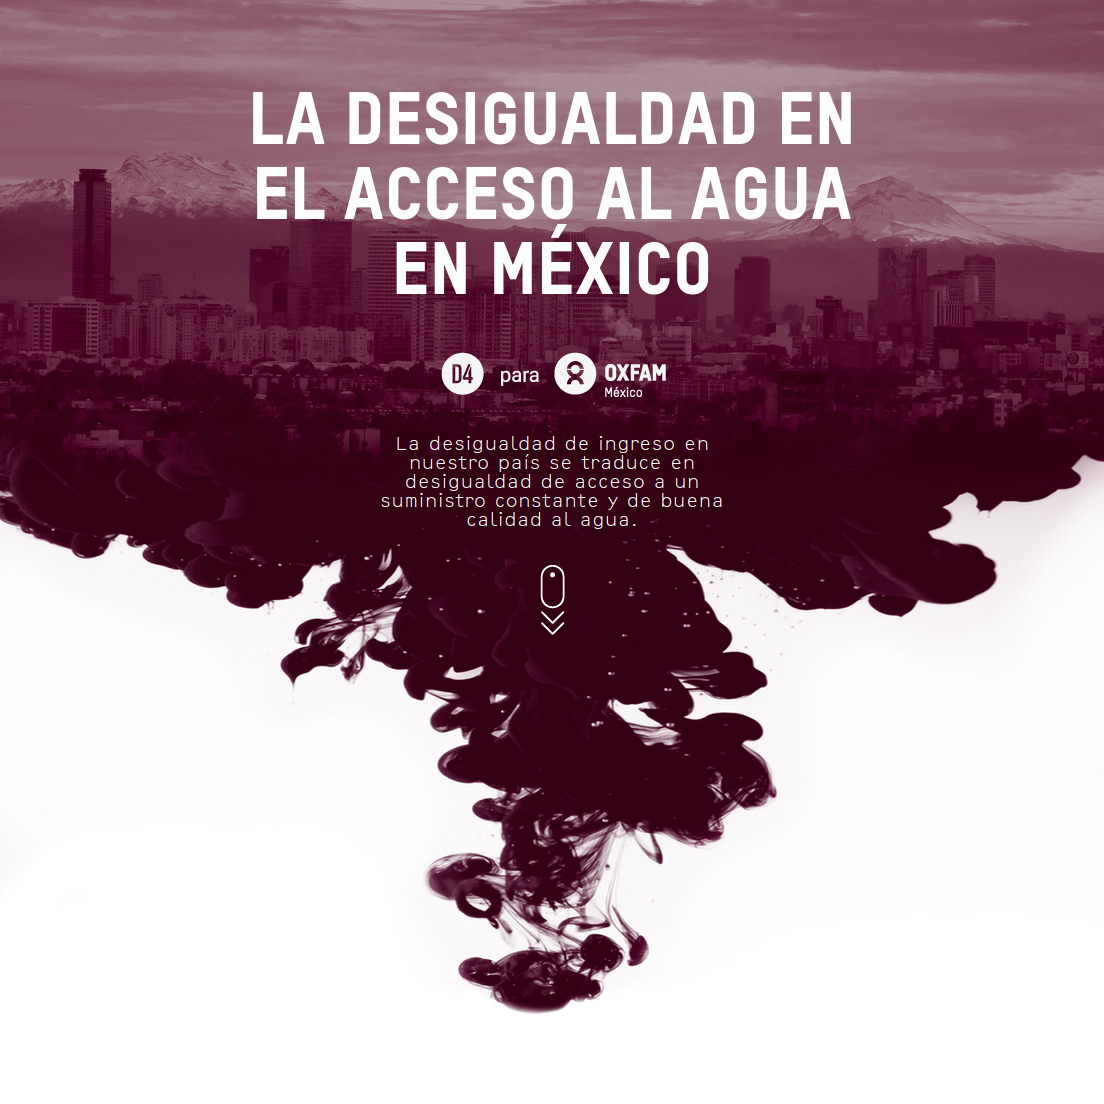 La desigualdad en el acceso al agua en México